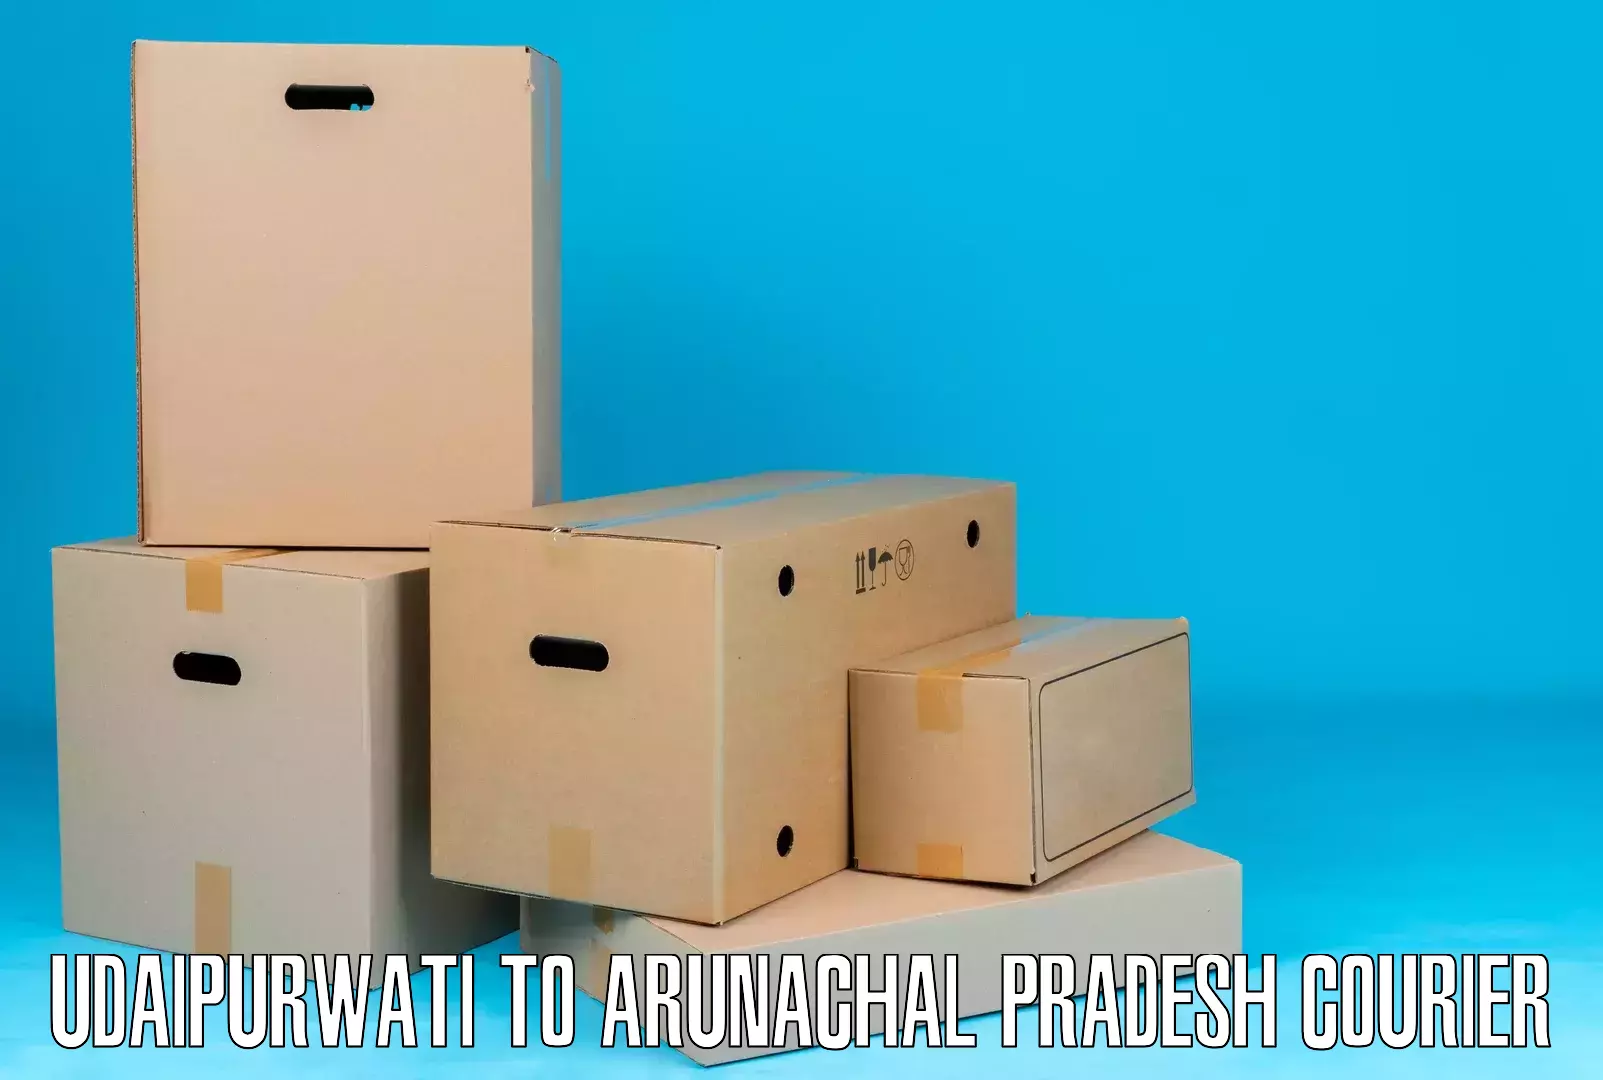 High-capacity shipping options Udaipurwati to Arunachal Pradesh